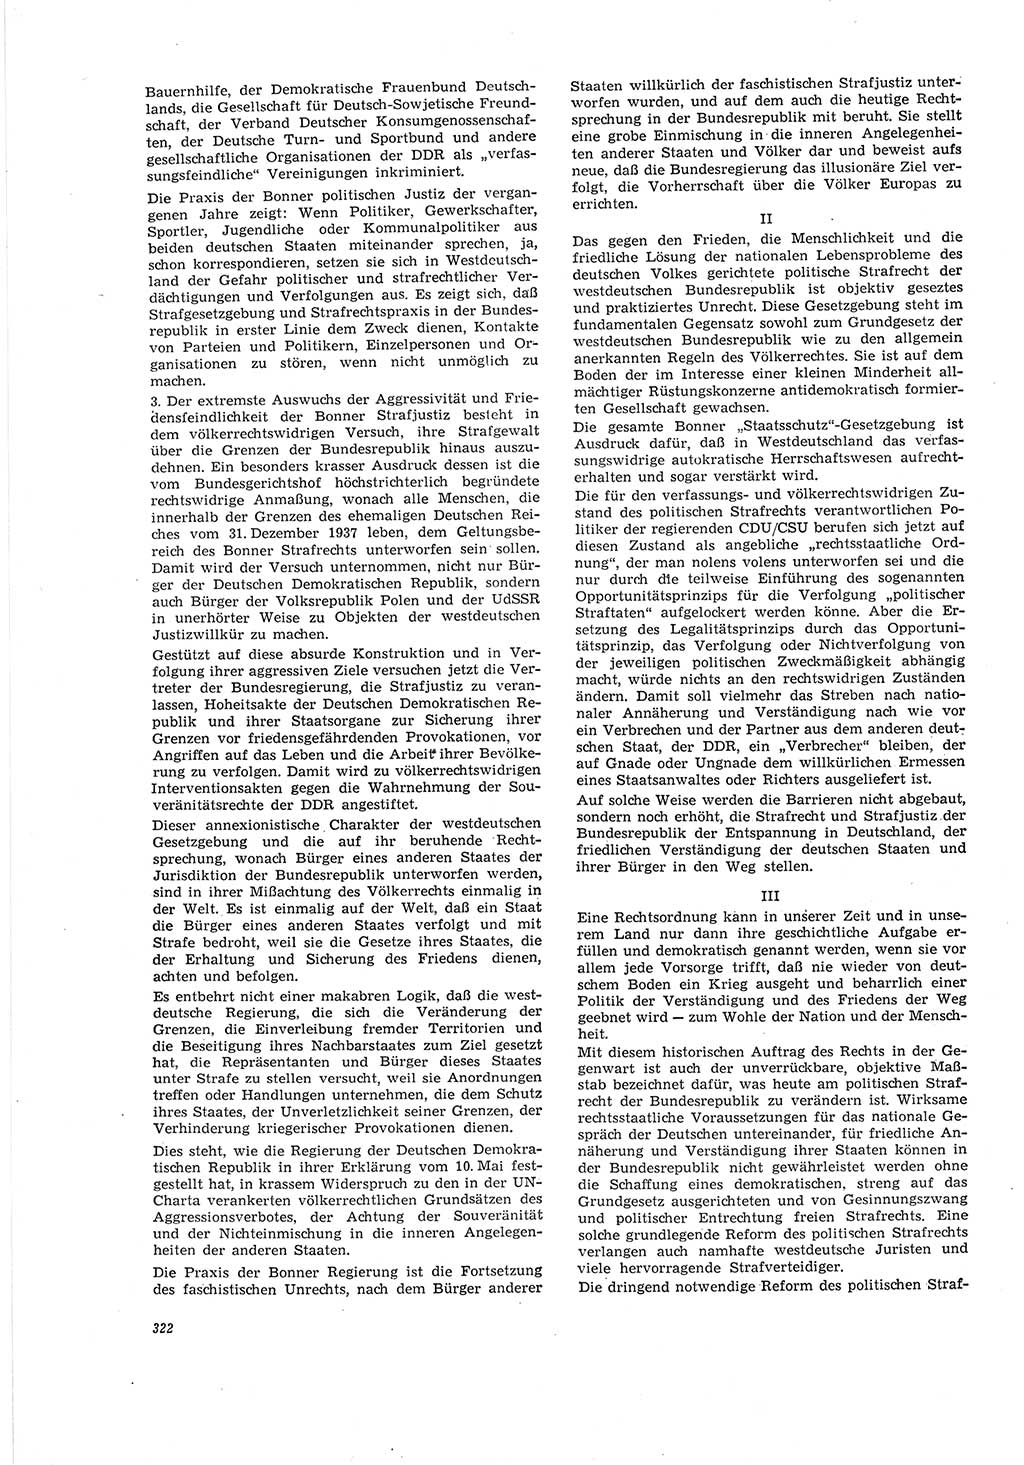 Neue Justiz (NJ), Zeitschrift für Recht und Rechtswissenschaft [Deutsche Demokratische Republik (DDR)], 20. Jahrgang 1966, Seite 322 (NJ DDR 1966, S. 322)